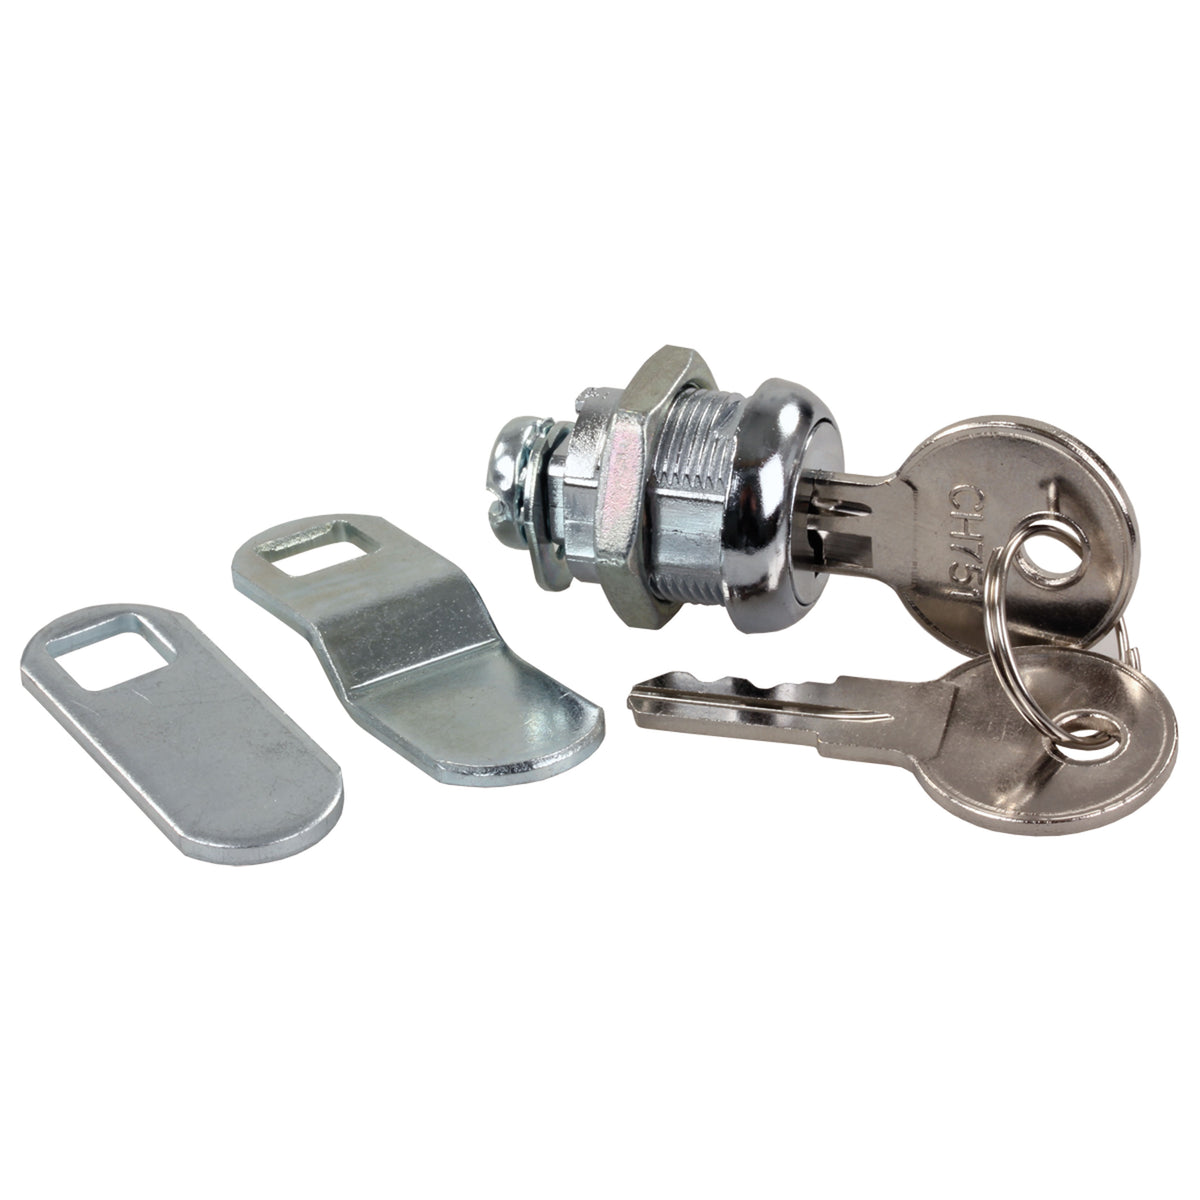 JR Products 00305 Standard Compartment Door Key Lock - 5/8"